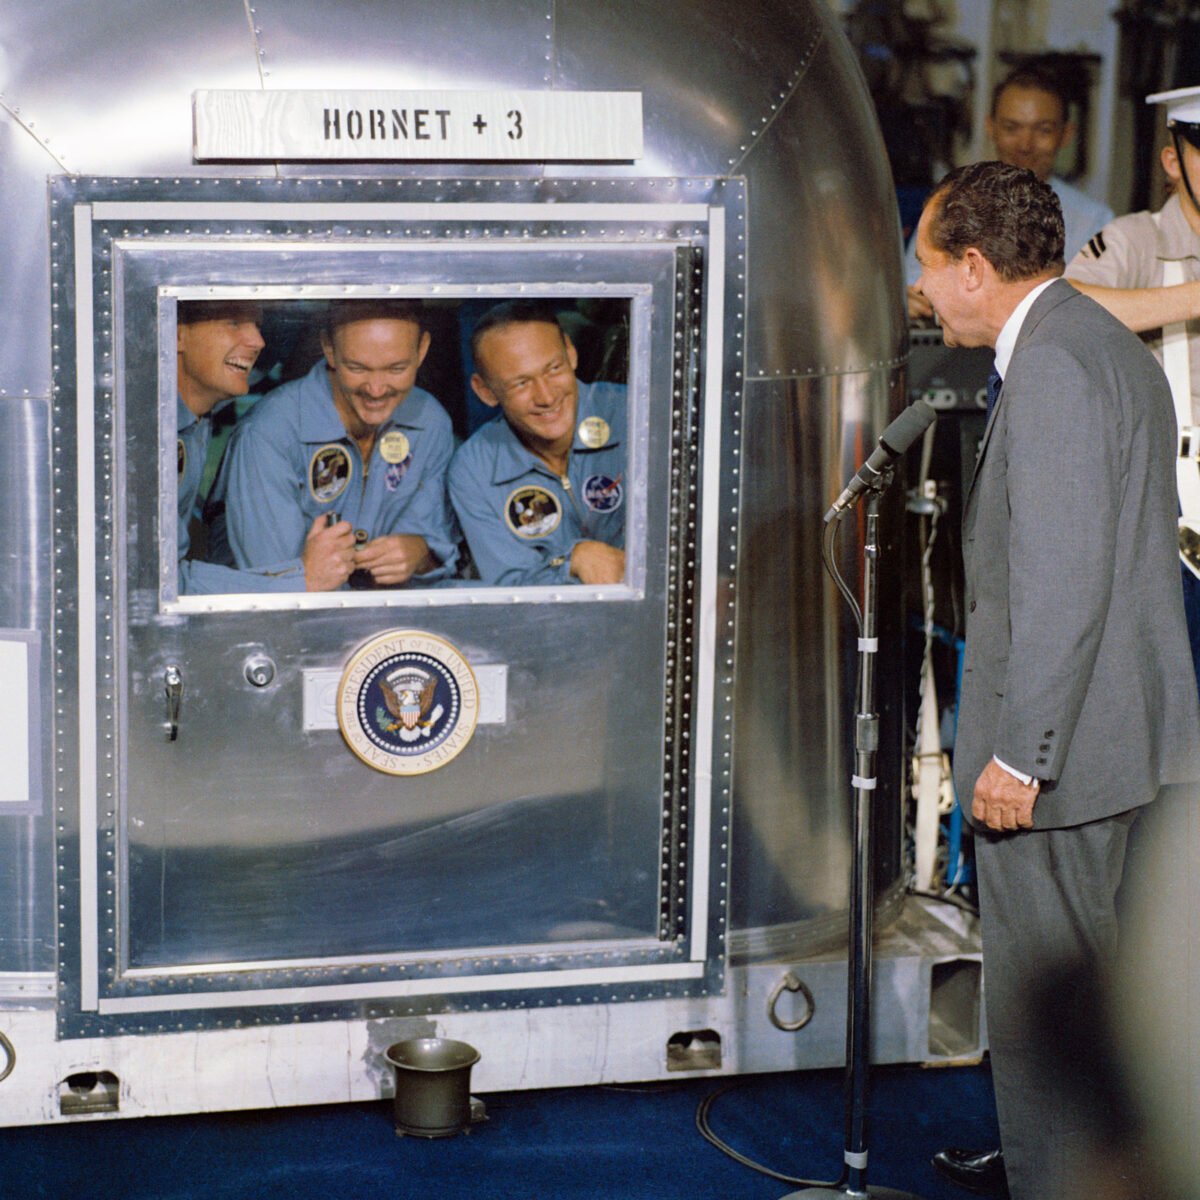 Ο πρόεδρος Νίξον χαιρετά τους αστροναύτες της αποστολής Απόλλων 11, οι οποίοι μετά την επιστροφή τους στη Γη είχαν μπει σε καραντίνα για να εξασφαλιστεί πως δεν μετέφεραν εξωγήινους μικροοργανισμούς που μπορεί να αποδεικνύονταν μοιραίοι για την ανθρωπότητα (φωτ.: NASA on The Commons / Commons.wikimedia.org). 